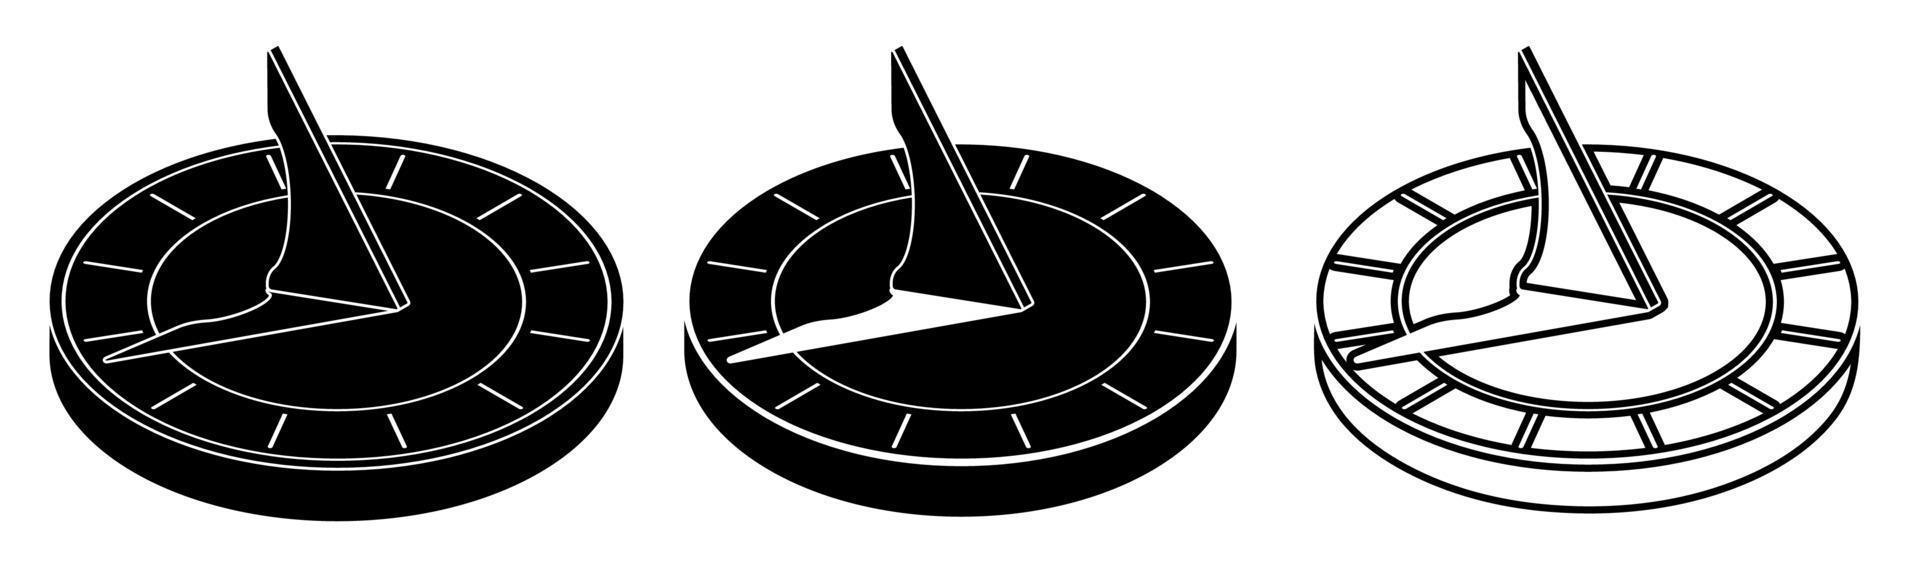 zonnewijzer pictogrammen. wijzerplaat en hand- voor meten tijd in oudheid. gereedschap voor meten tijd. vector